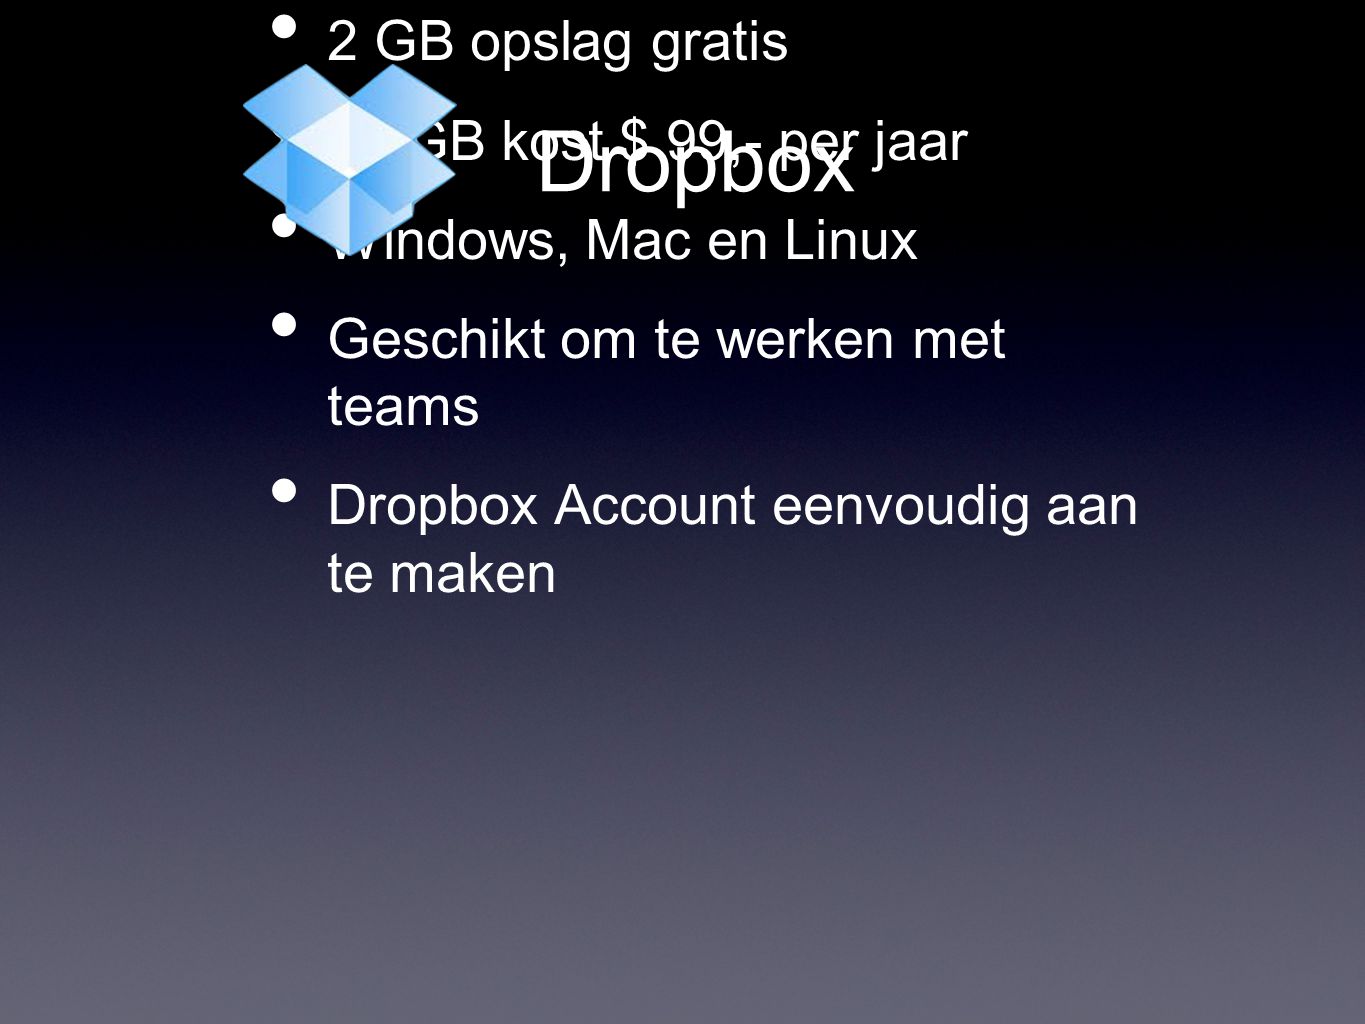 Dropbox • 2 GB opslag gratis • 50 GB kost $ 99,- per jaar • Windows, Mac en Linux • Geschikt om te werken met teams • Dropbox Account eenvoudig aan te maken